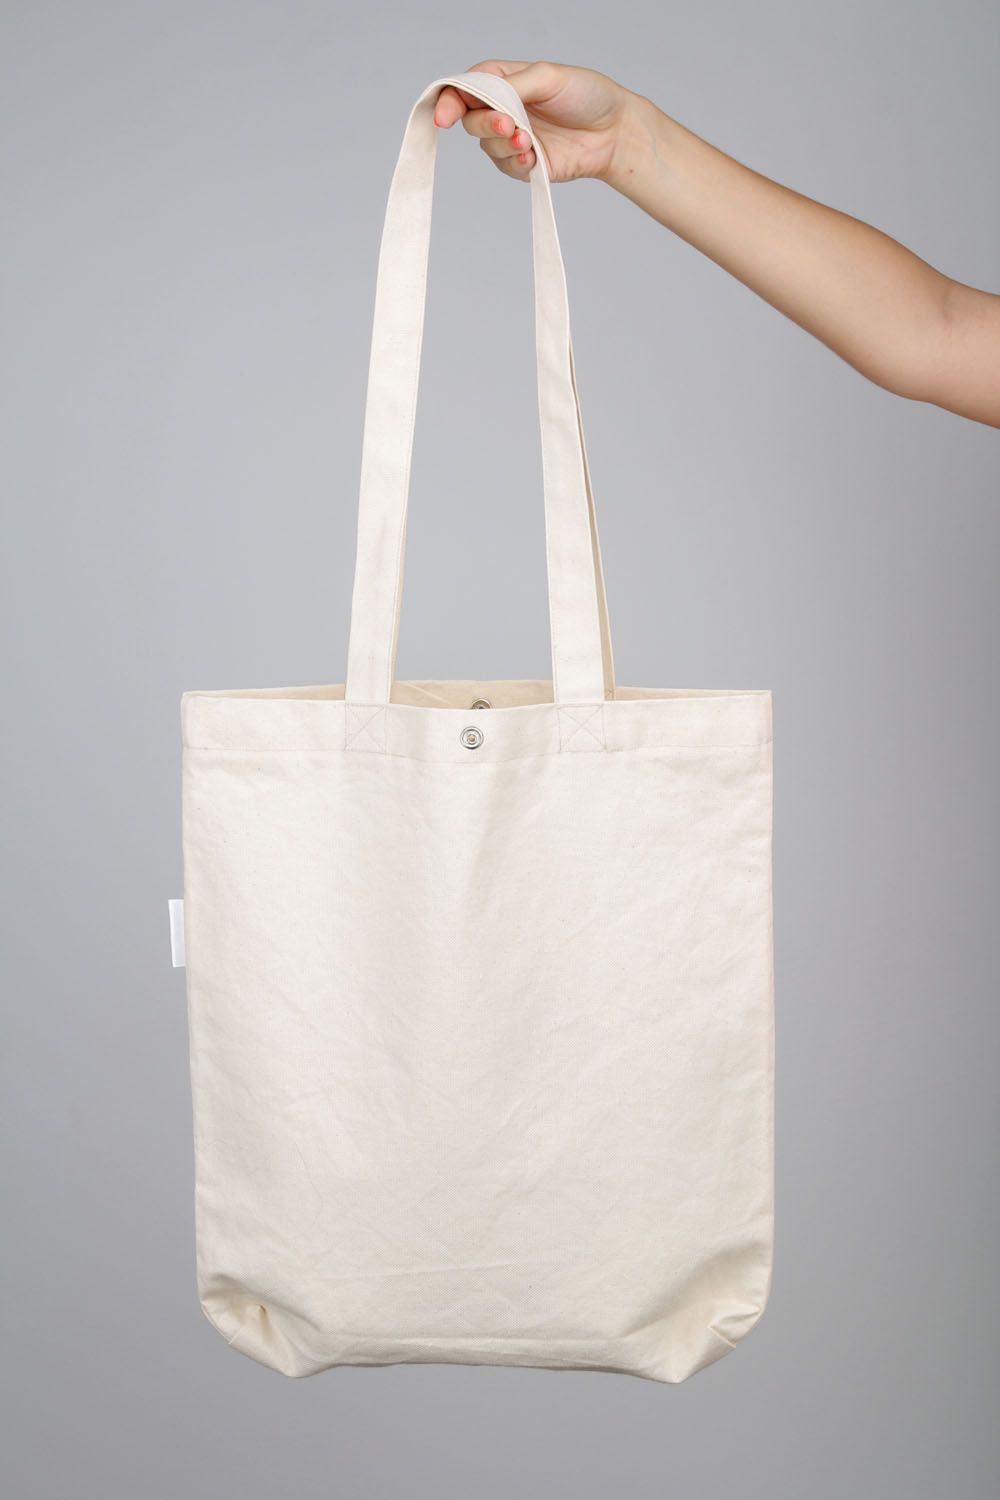 Grand sac à main blanc avec hibou fait main photo 3